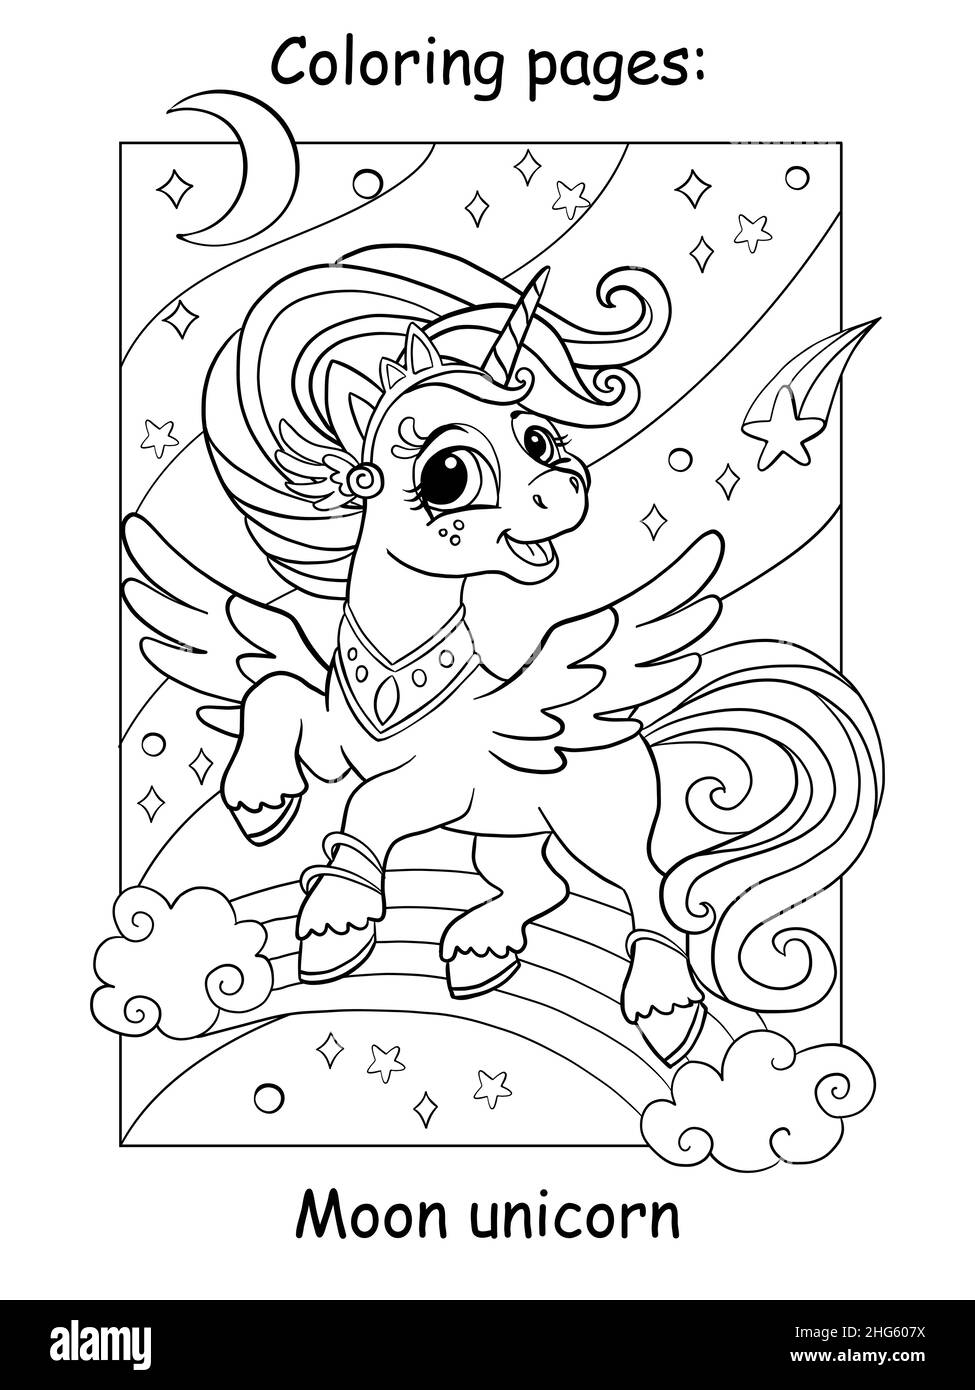 Niedliche Unicorn Prinzessin fliegen in den Himmel mit einem Regenbogen, Sterne und Mond. Zum ausmalen für Kinder. Vektorgrafik Cartoon-Illustration. Zum Färben boo Stock Vektor